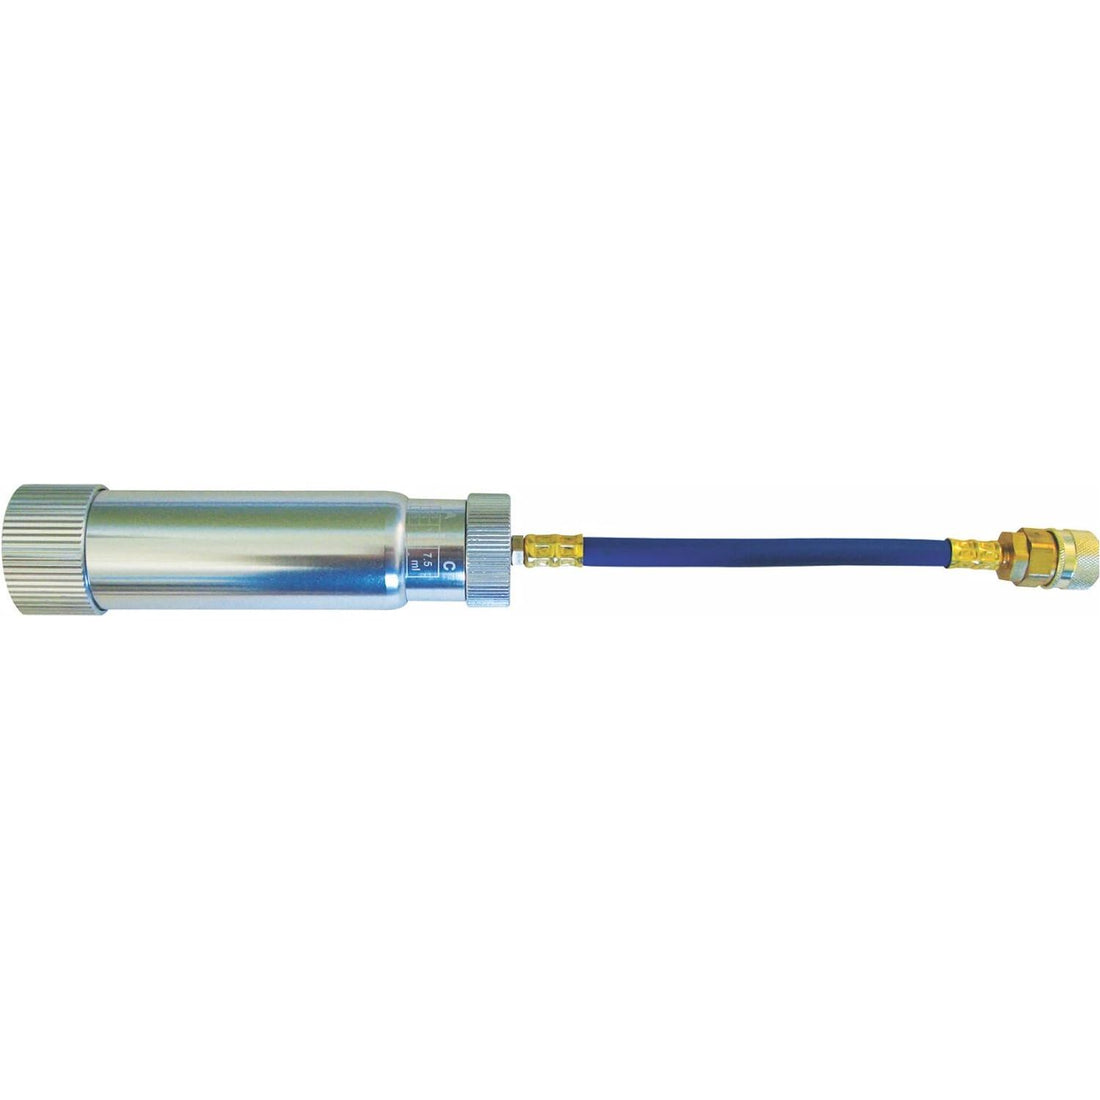 TSI Supercool 43460 Hand Turn Injector (HFO-1234yf)